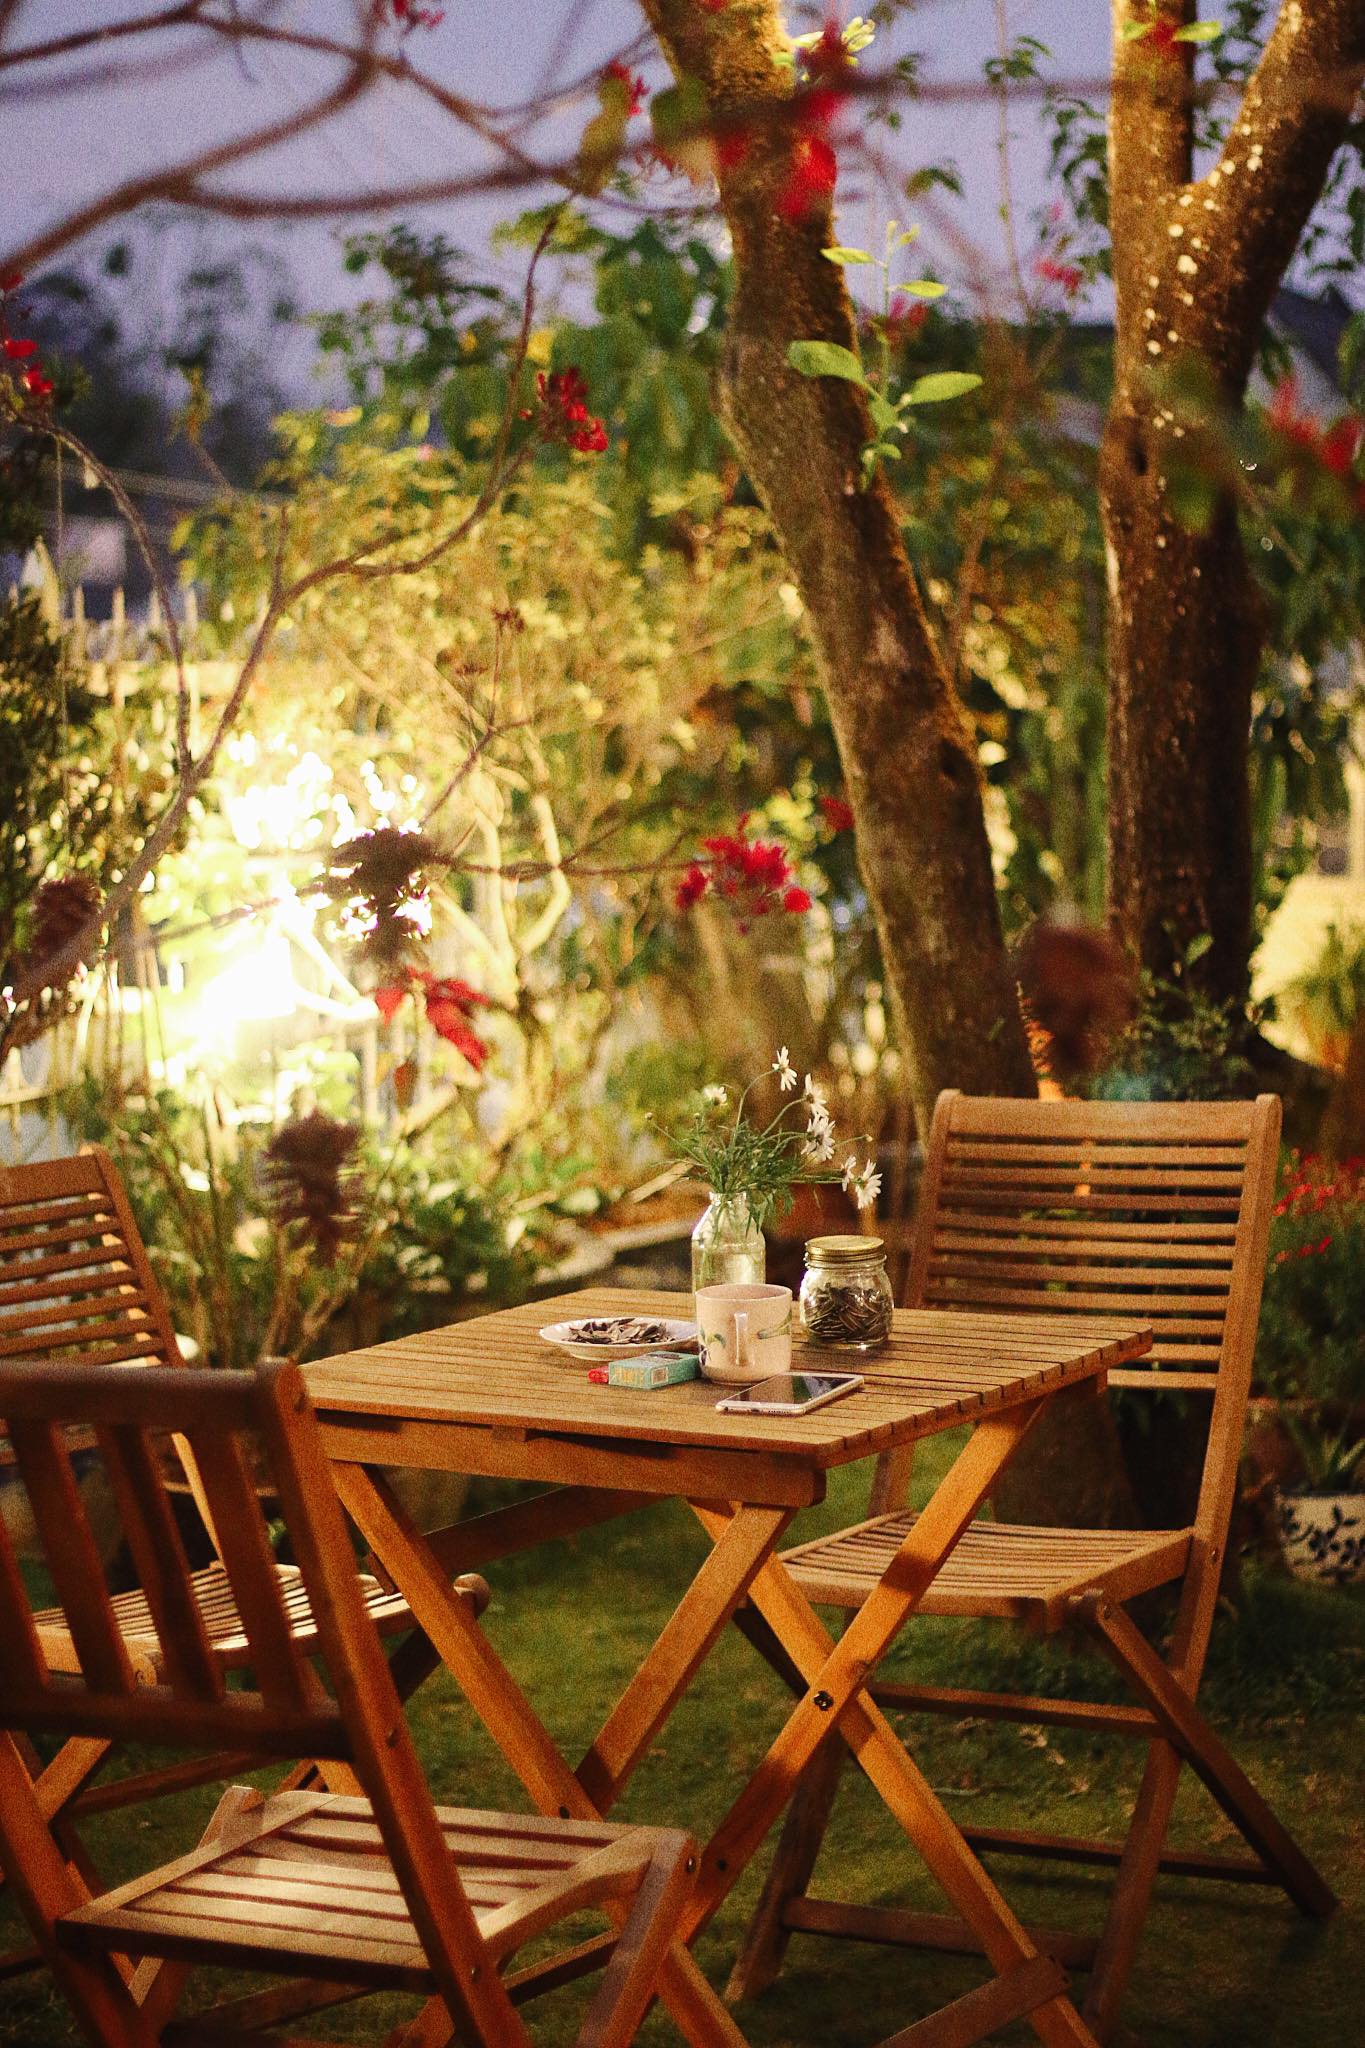 Tiệm cà phê Khu vườn mùa hè - Úm ba la ra quán cà phê mộng mơ đi một lần post hình một tuần ở Đà Lạt 6